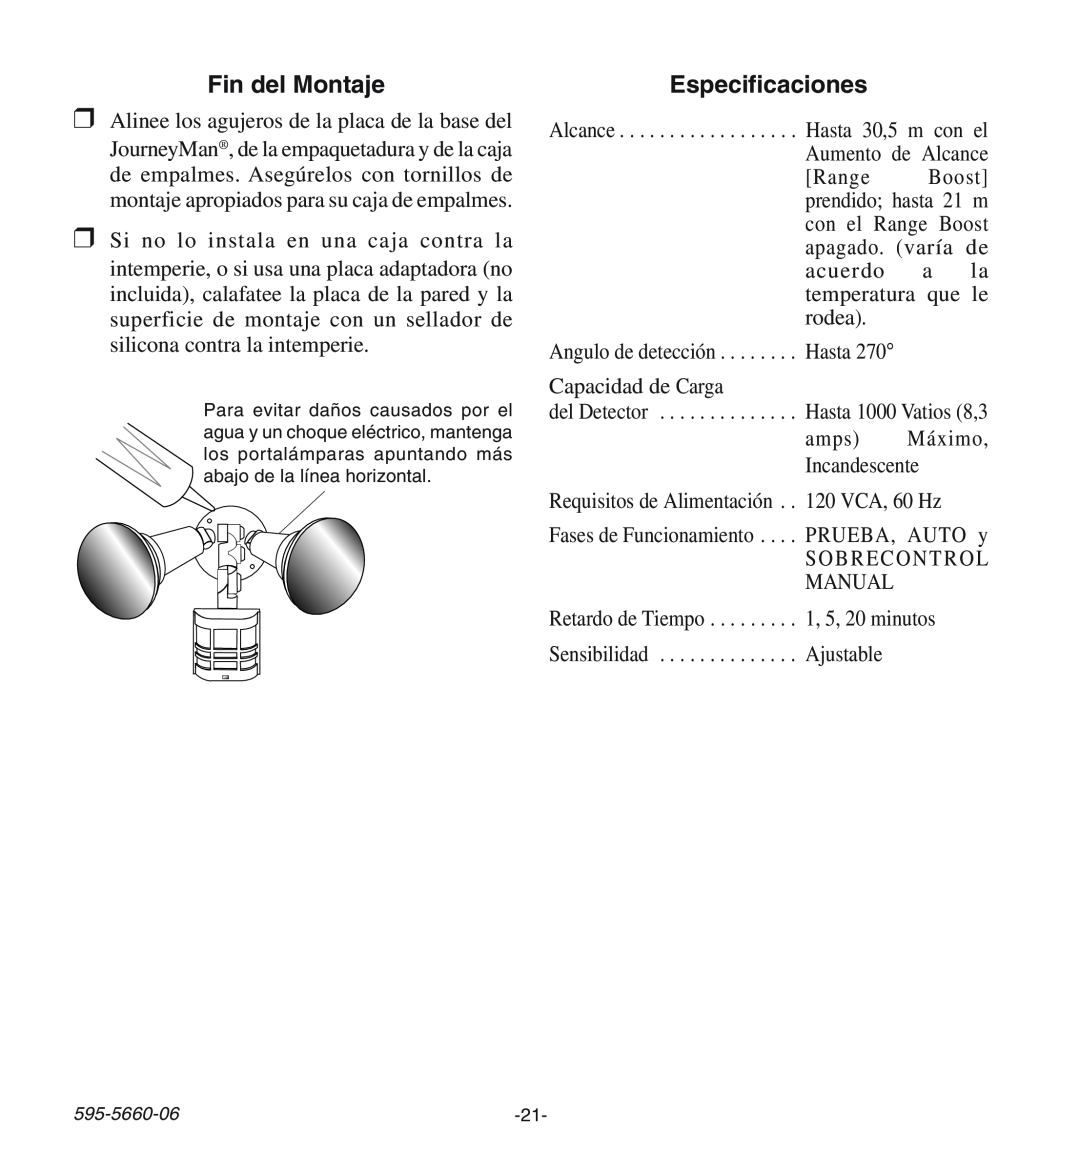 Desa HD-9140 manual Fin del Montaje, Especificaciones 